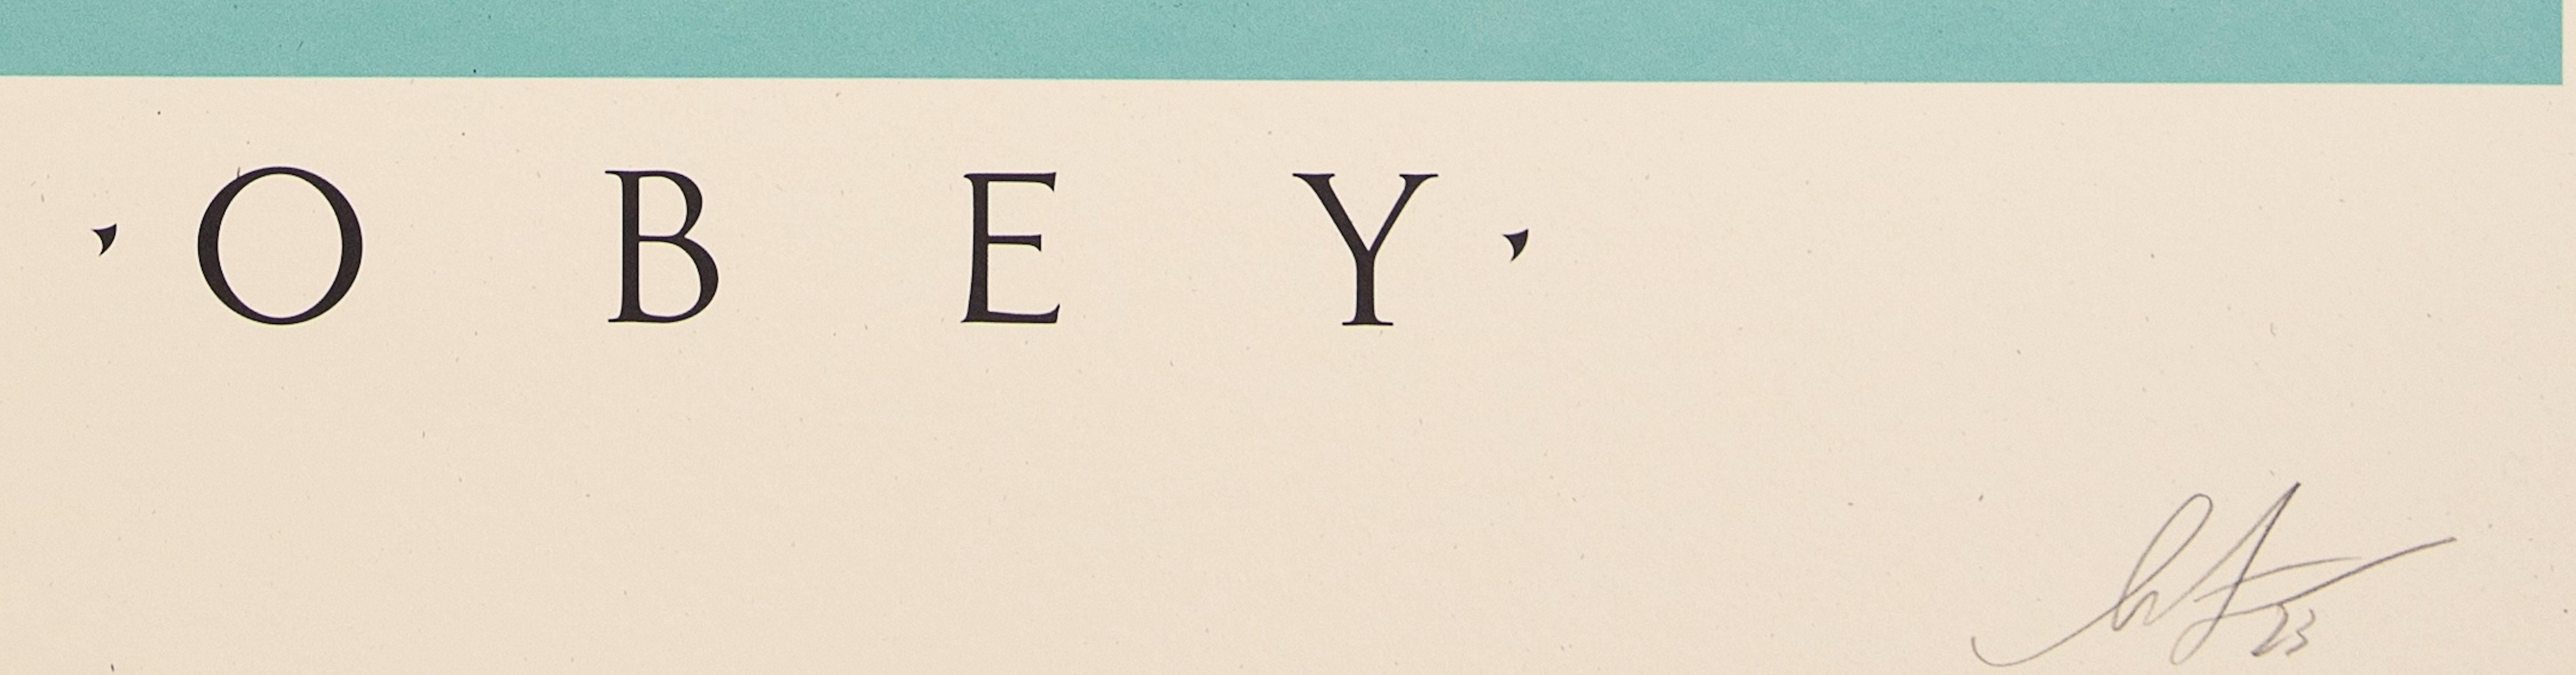 Shepard Fairey
Schattenspiel

Siebdruck
Mit Bleistift vom Künstler handsigniert 
Unnumerierter Probedruck
Größe 91 x 61 cm (ca. 36 x 24 Zoll)

Ausgezeichneter Zustand